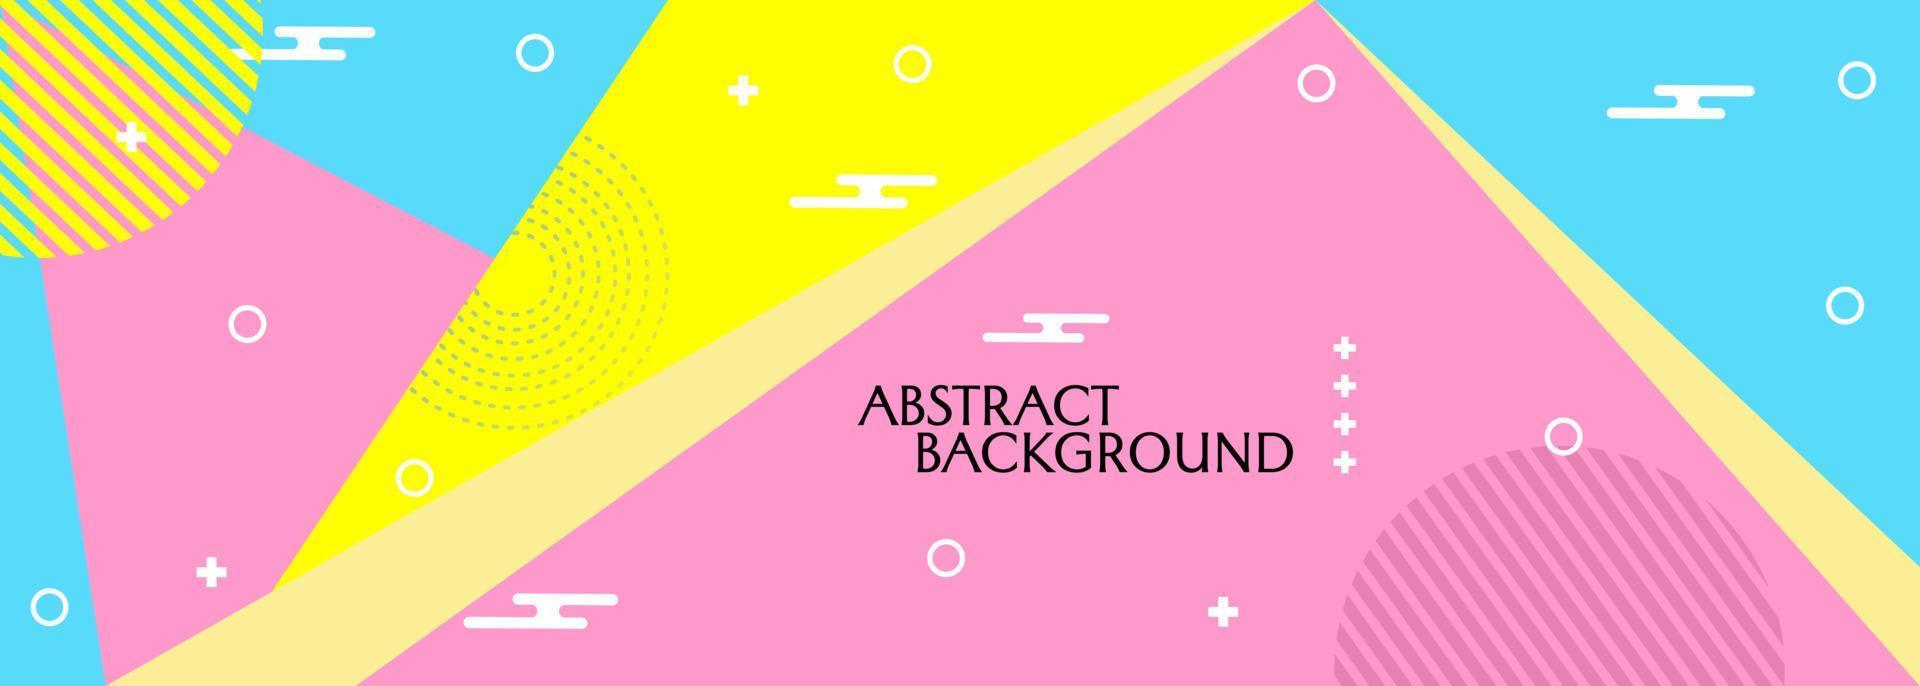 fondo geométrico abstracto estilo memphis y colores alegres. utilizado para el diseño de pancartas, vallas publicitarias de eventos vector